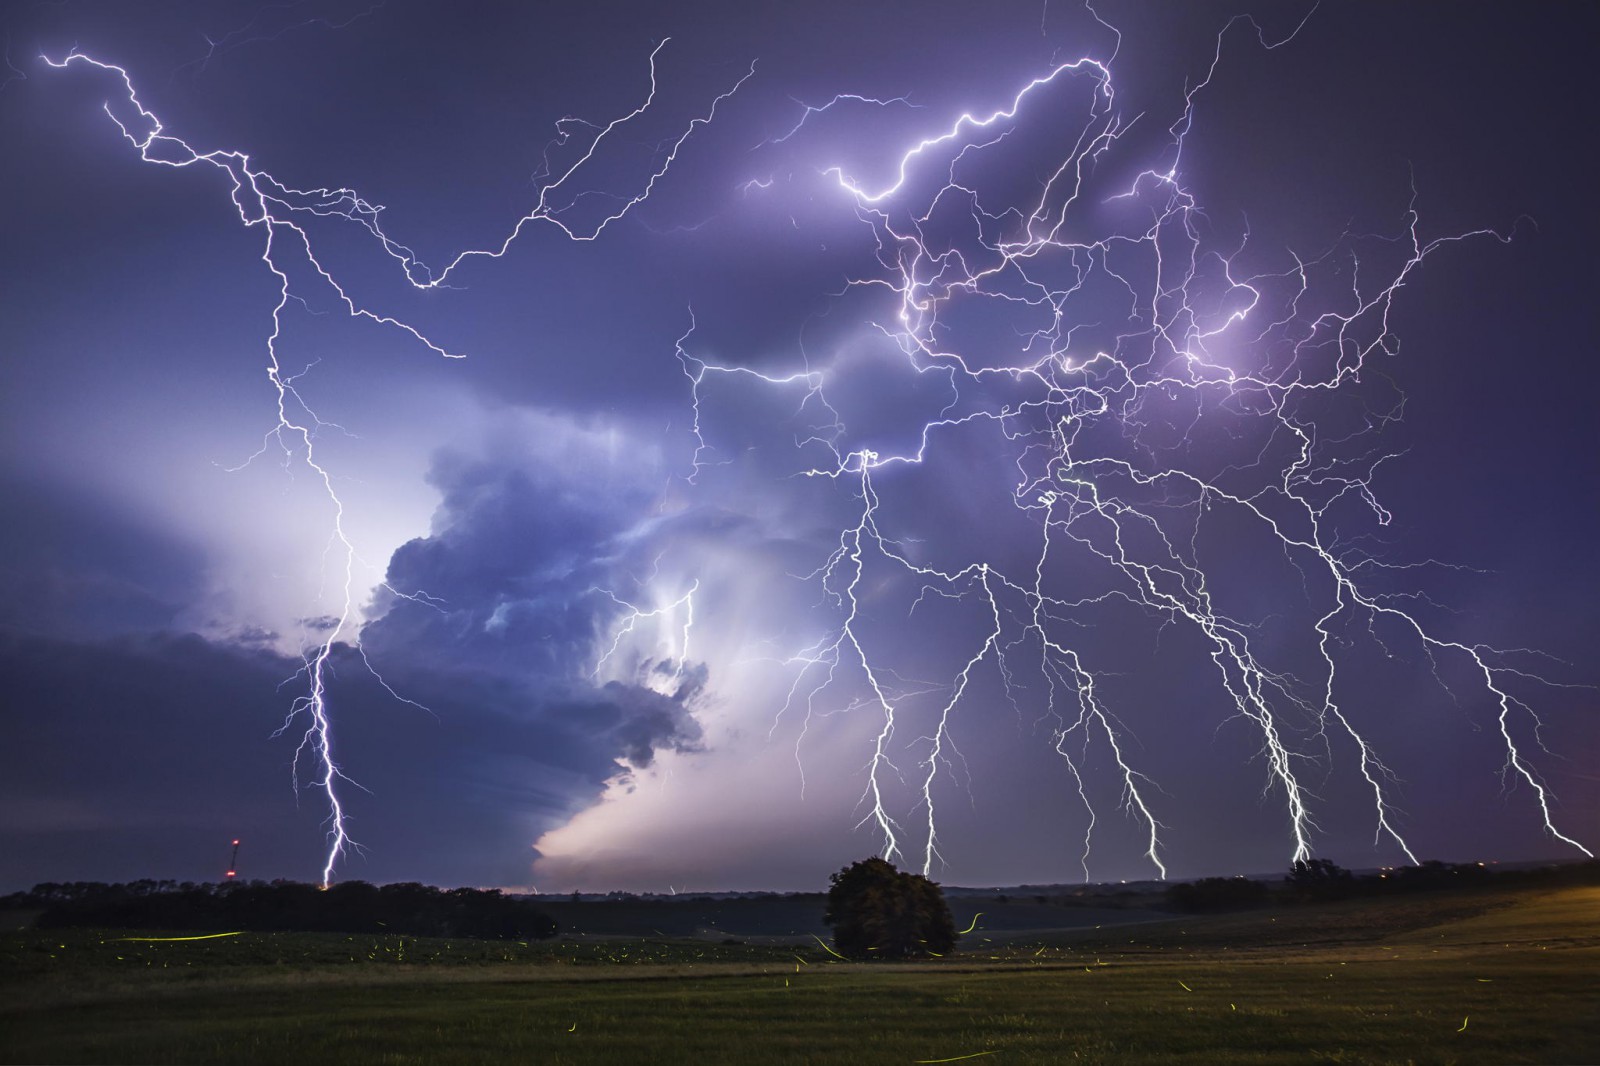 20 Εκπληκτικές φωτογραφίες από τον μεγαλύτερο κυνηγό καταιγίδων. Εντυπωσιακές. - Εικόνα 9